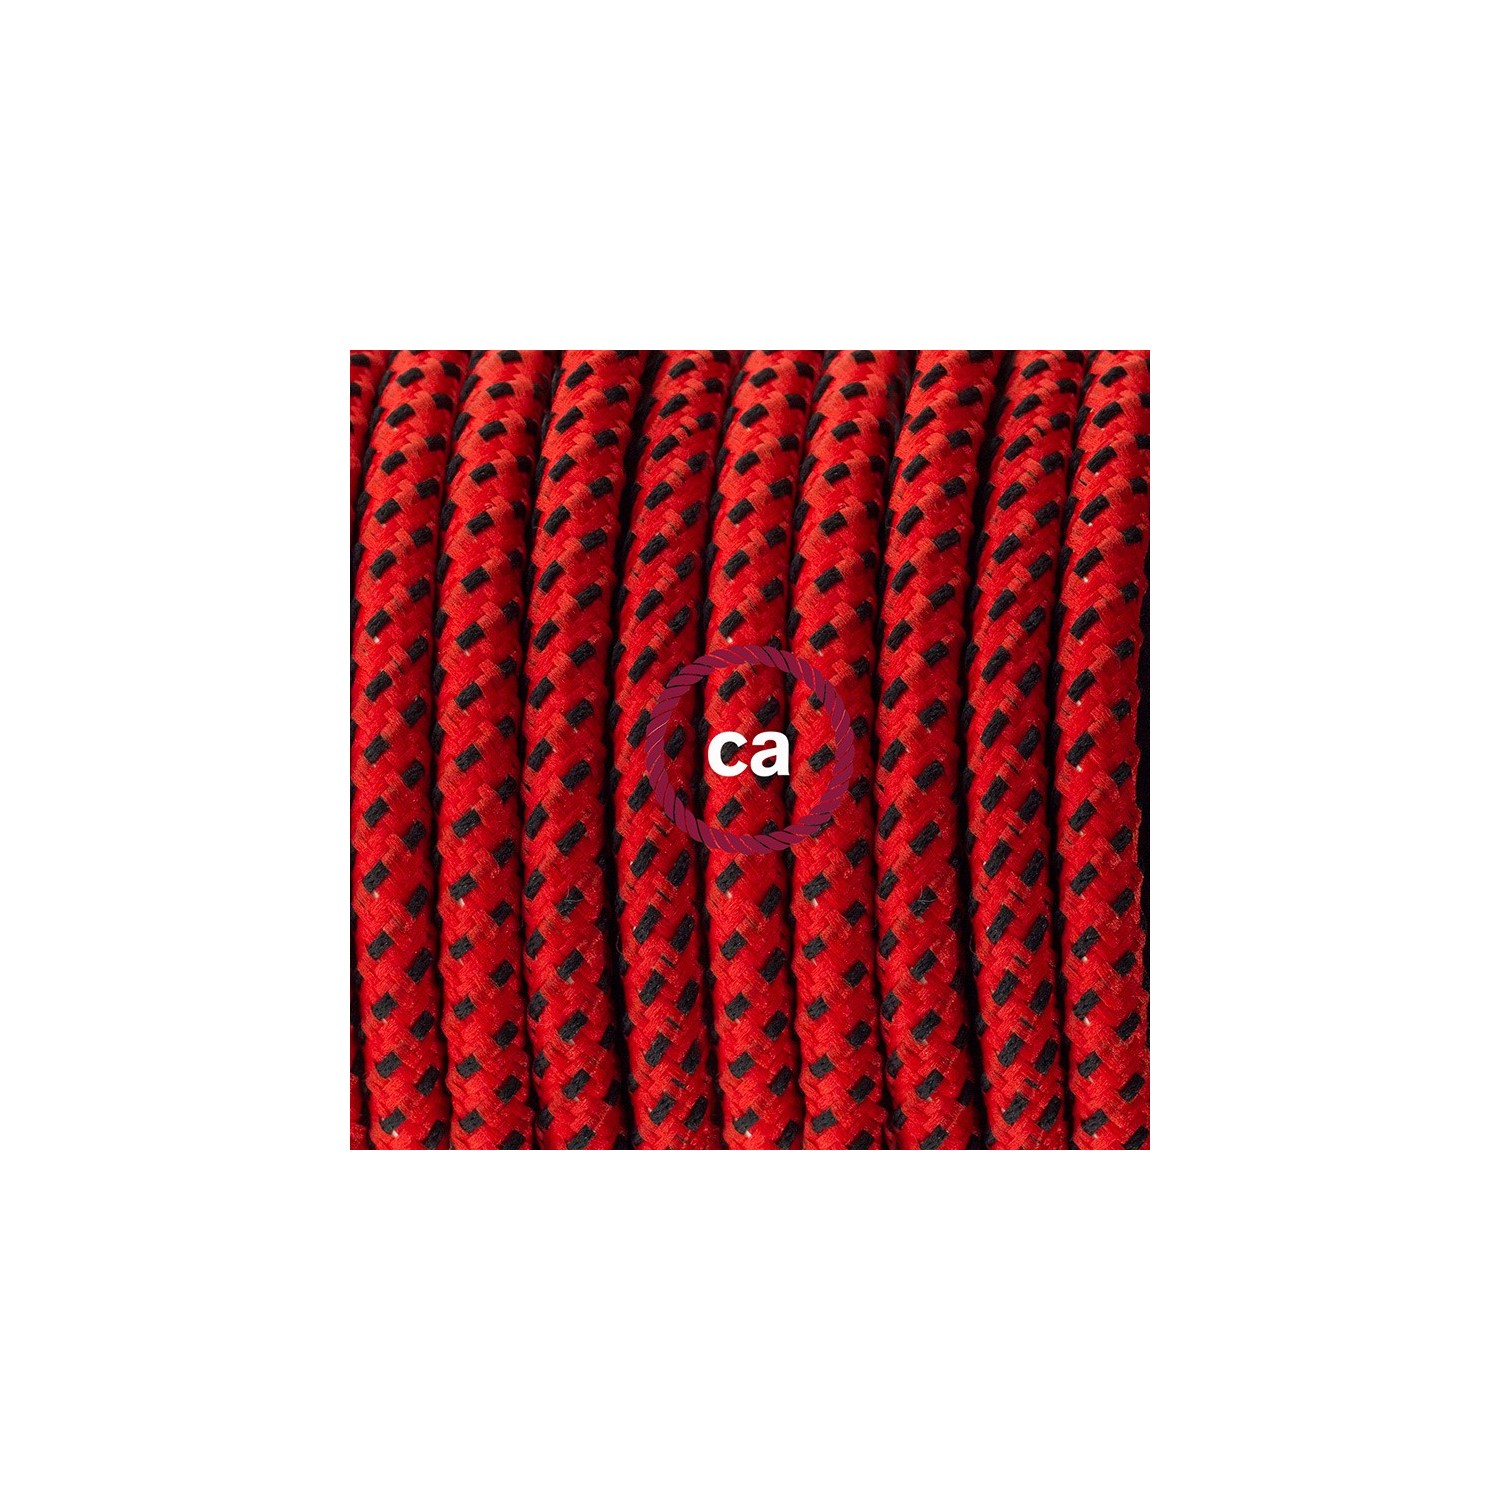 Υφασματινο Καλώδιο για Φωτιστικά Δαπέδου RT94 Κόκκινη Λάβα - 3 m. Με διακόπτη ποδός και φις.